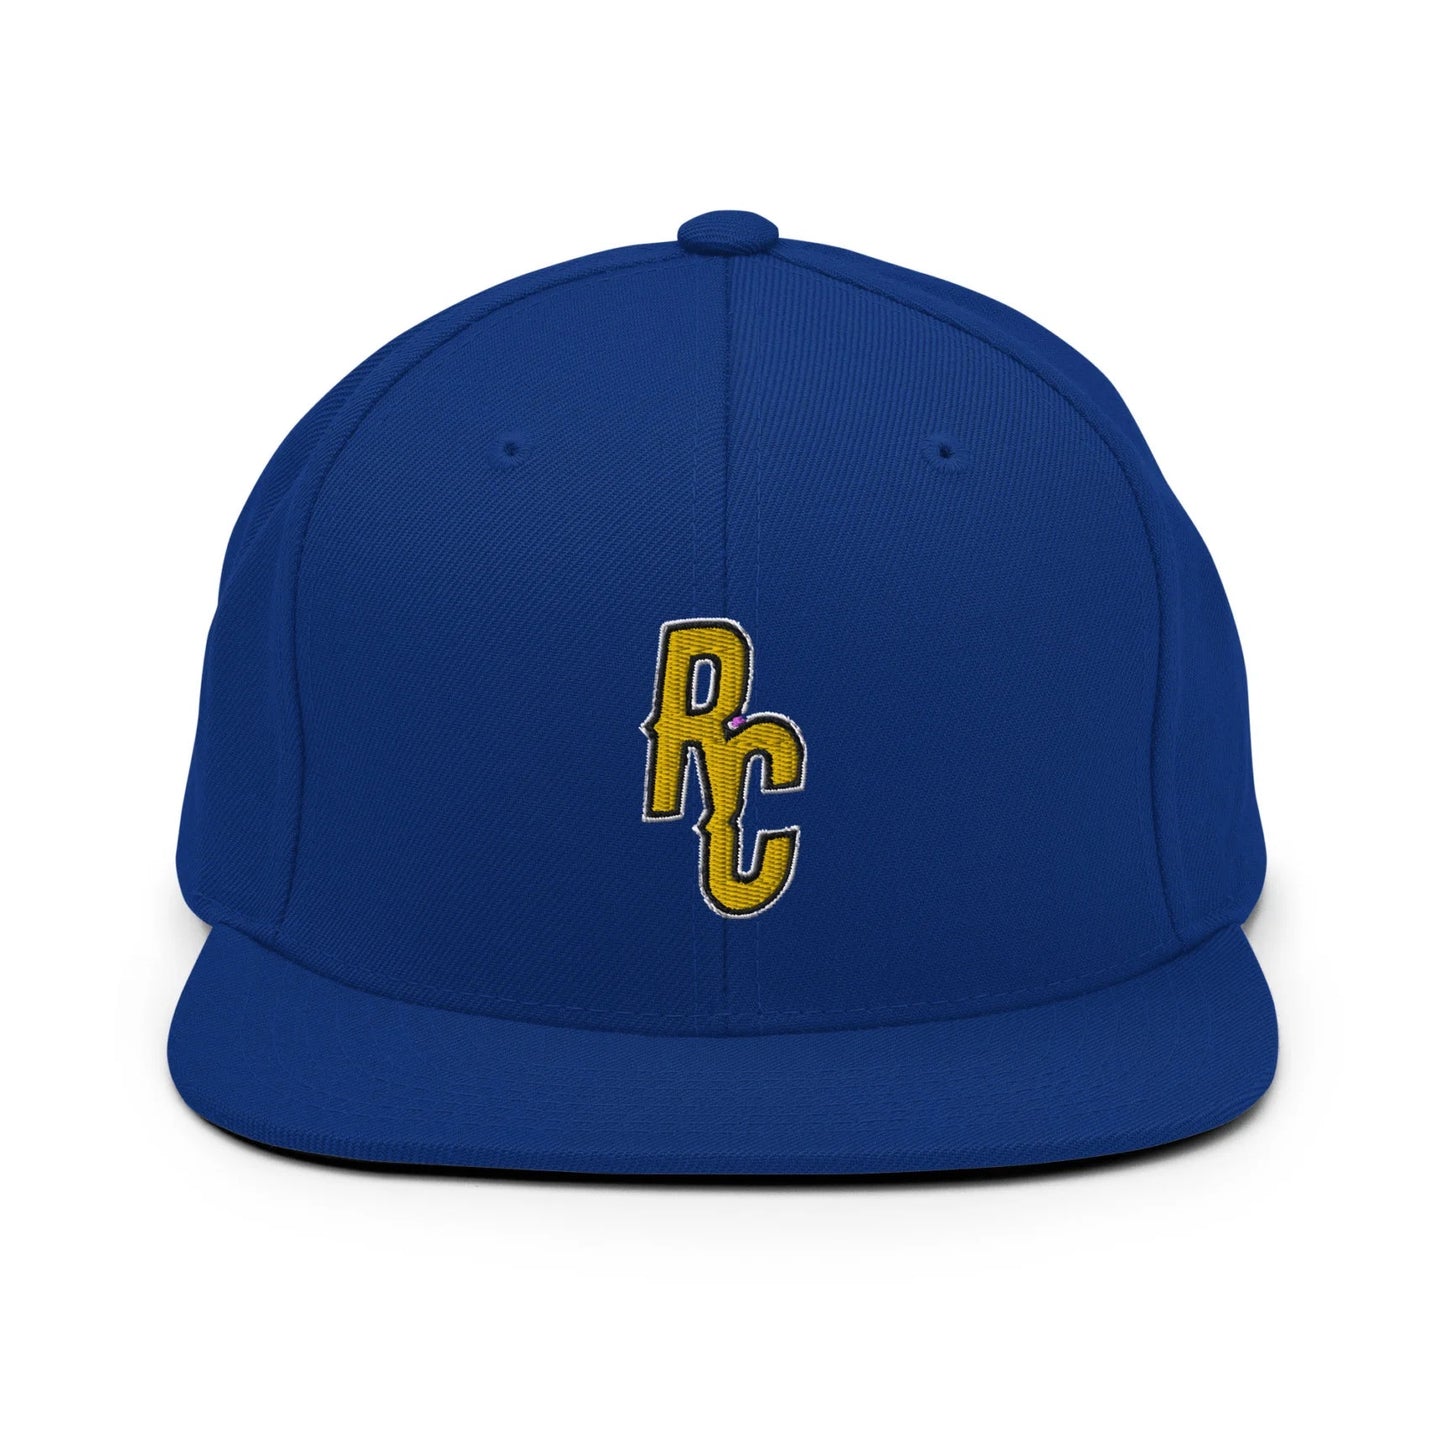 Ray Cheesy ShowZone snapback hat in royal blue